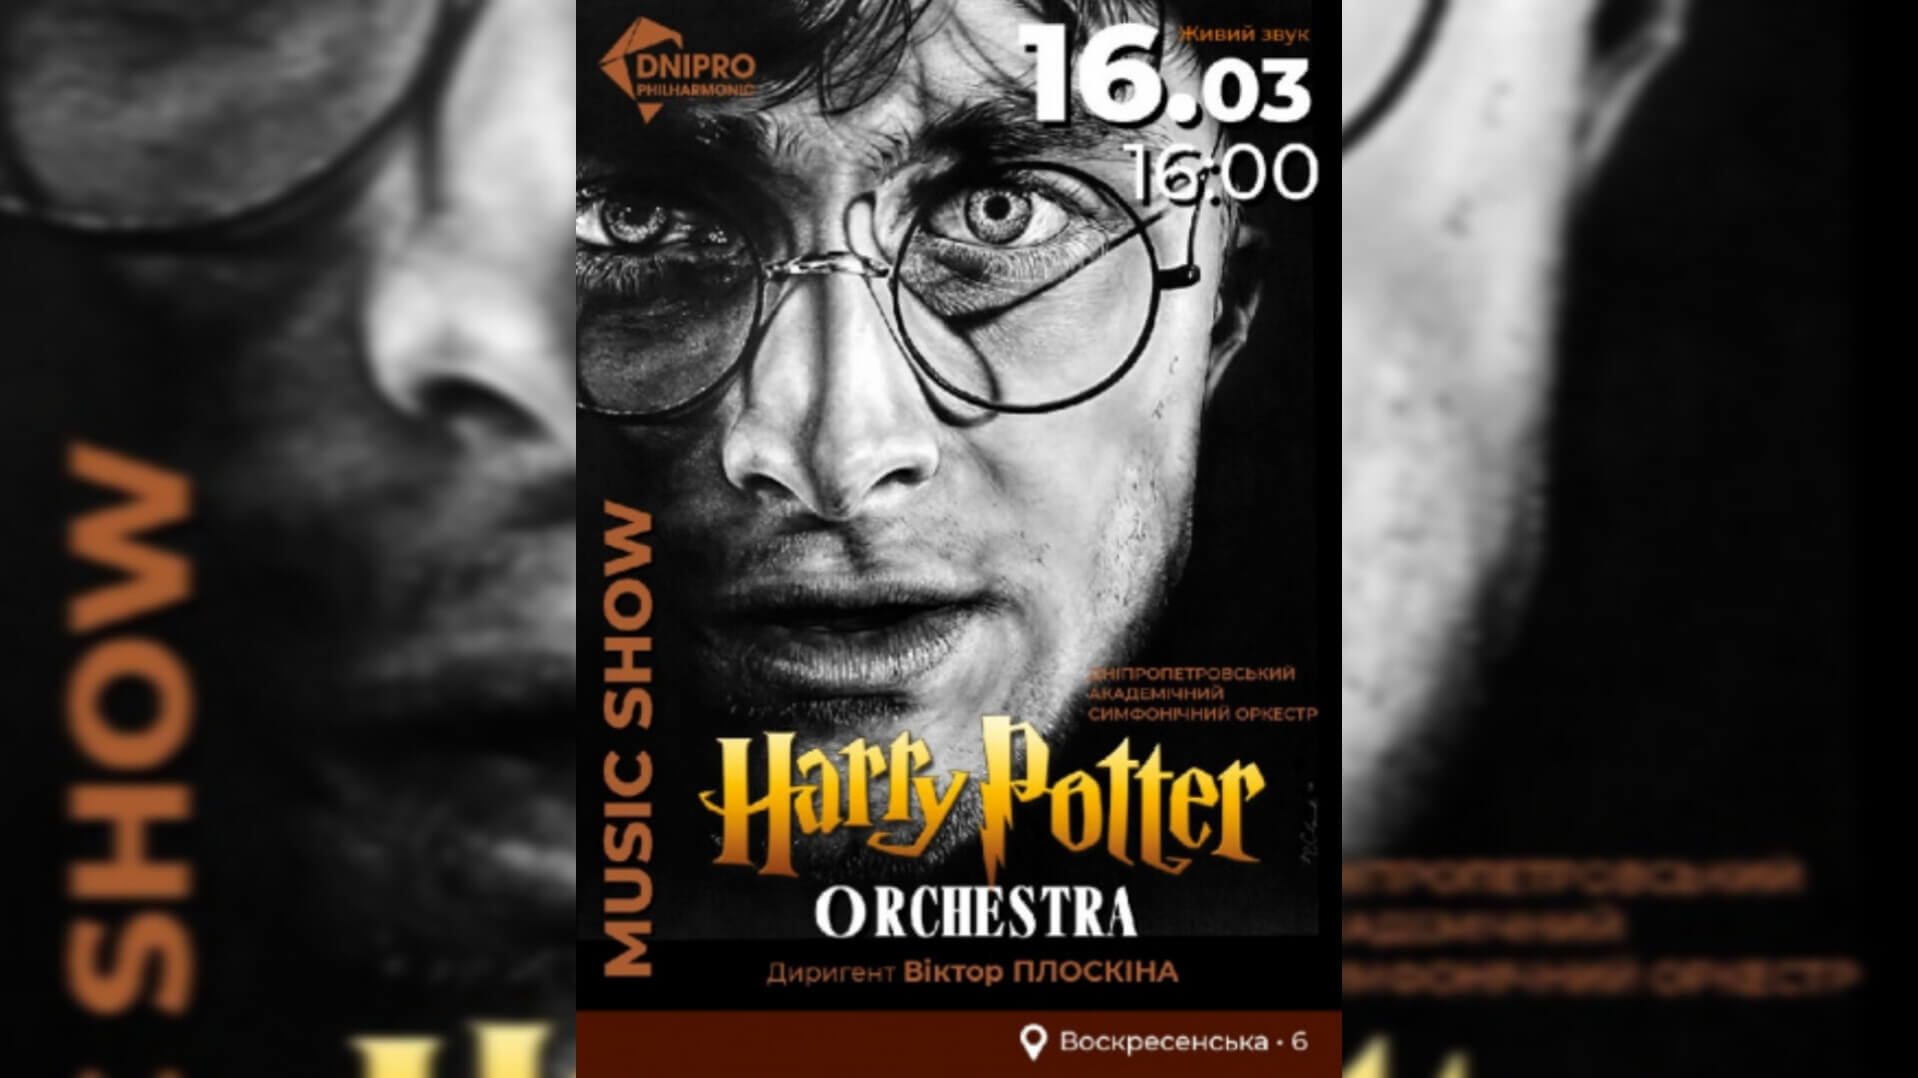 Відчуйте магію Гоґвортсу у Дніпрі: концерт Harry Potter Orchestra